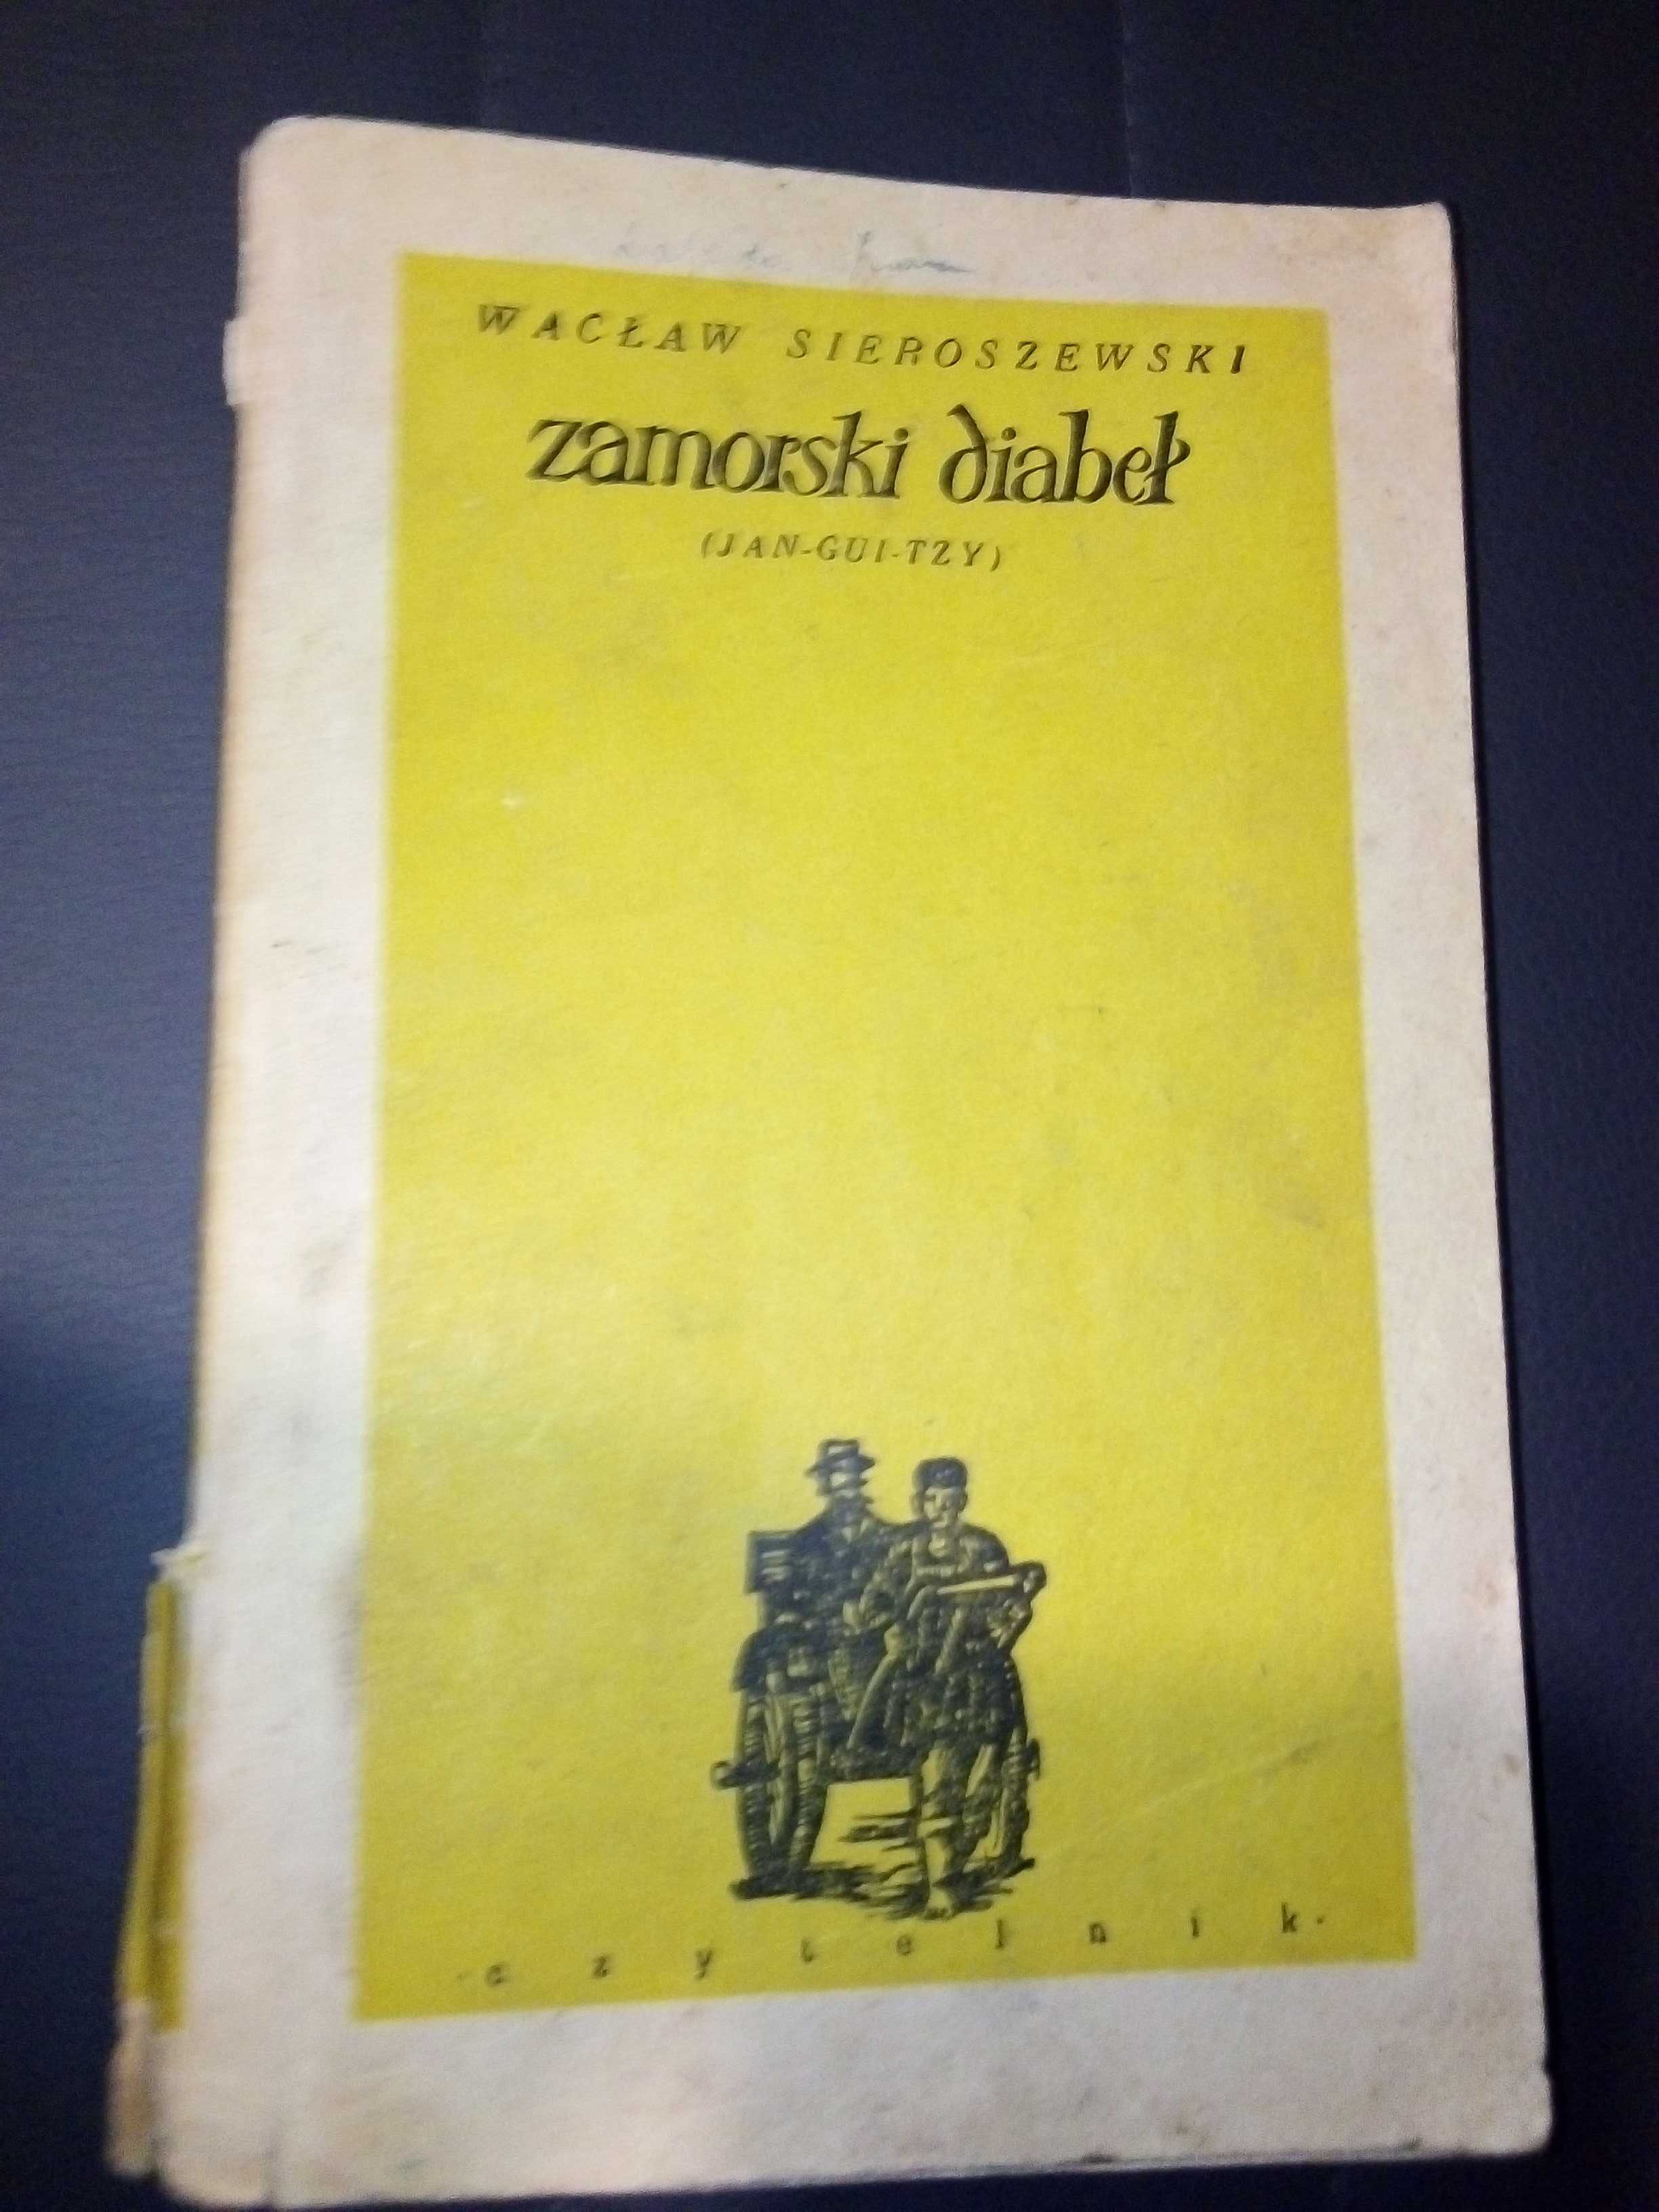 Zamorski diabeł - Wacław Sieroszewski - 1955r książka